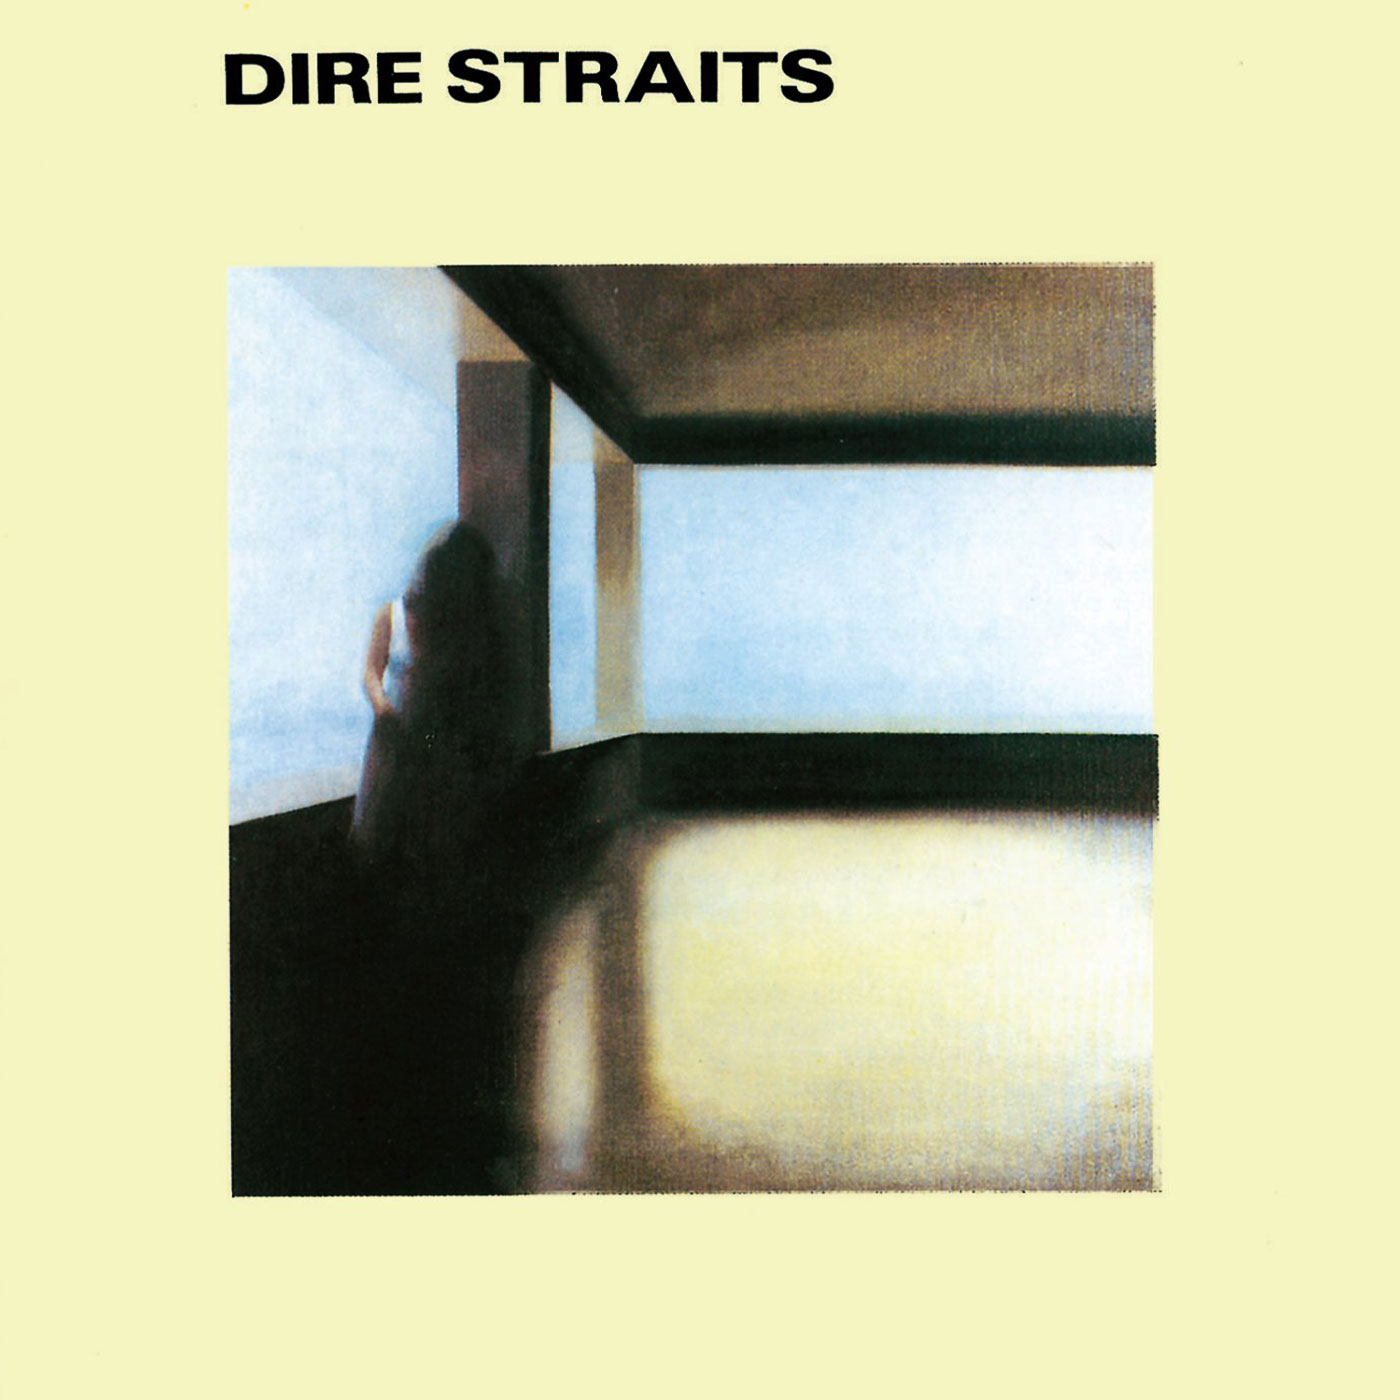 419 Dire Straits – Dire Straits